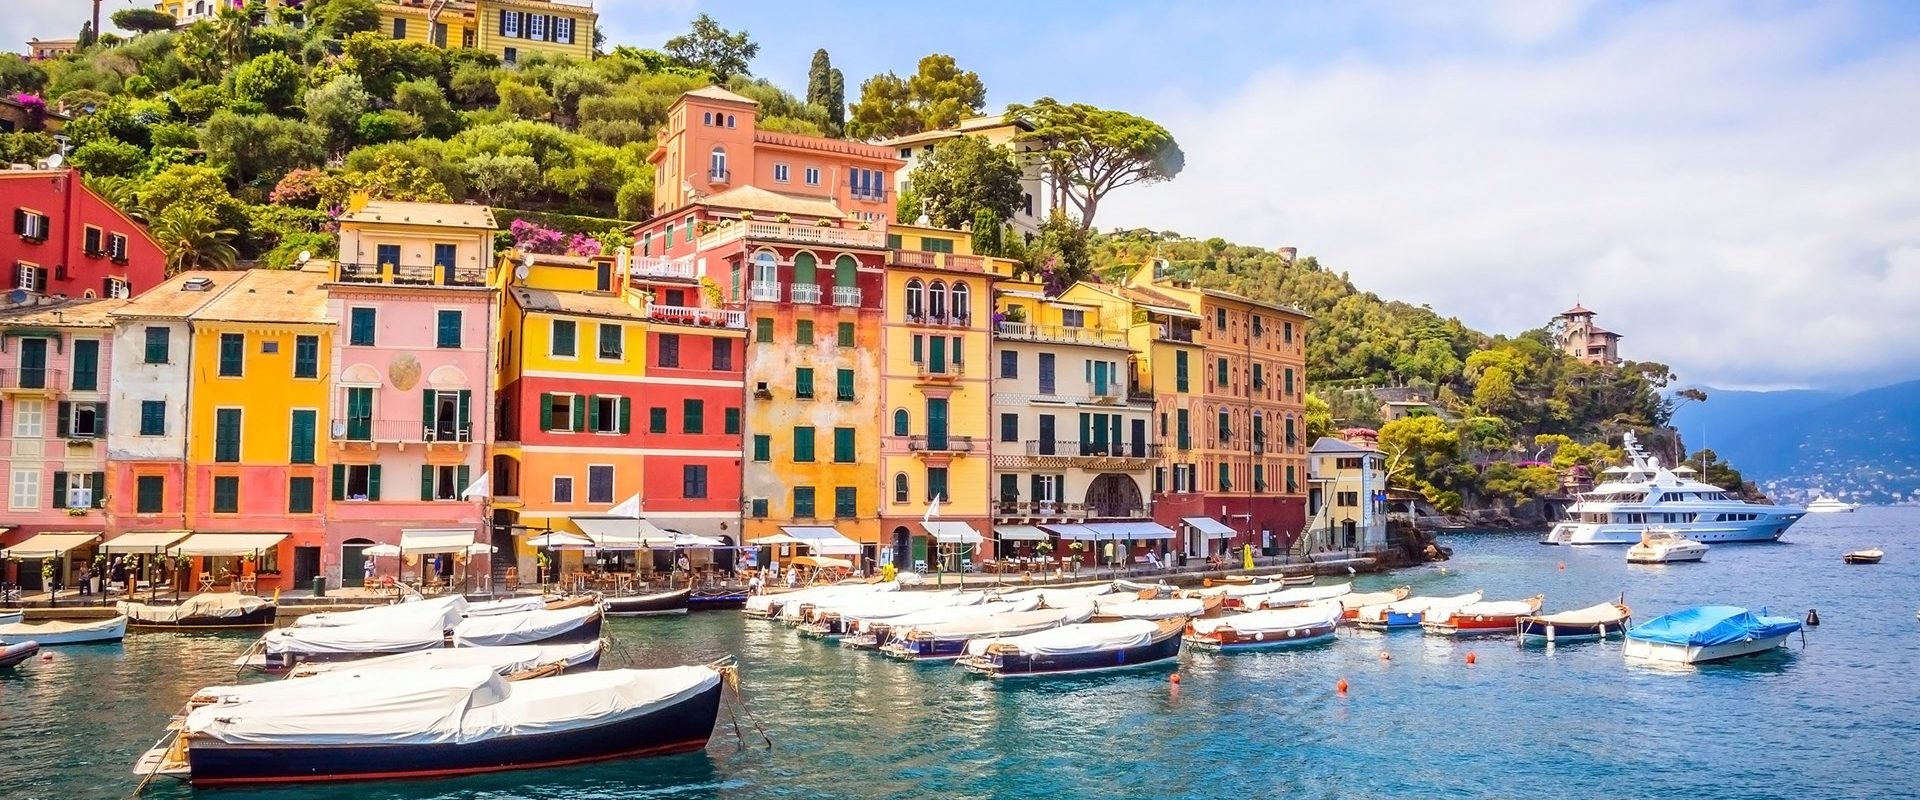 A trip to Portofino from the Cinque Terre